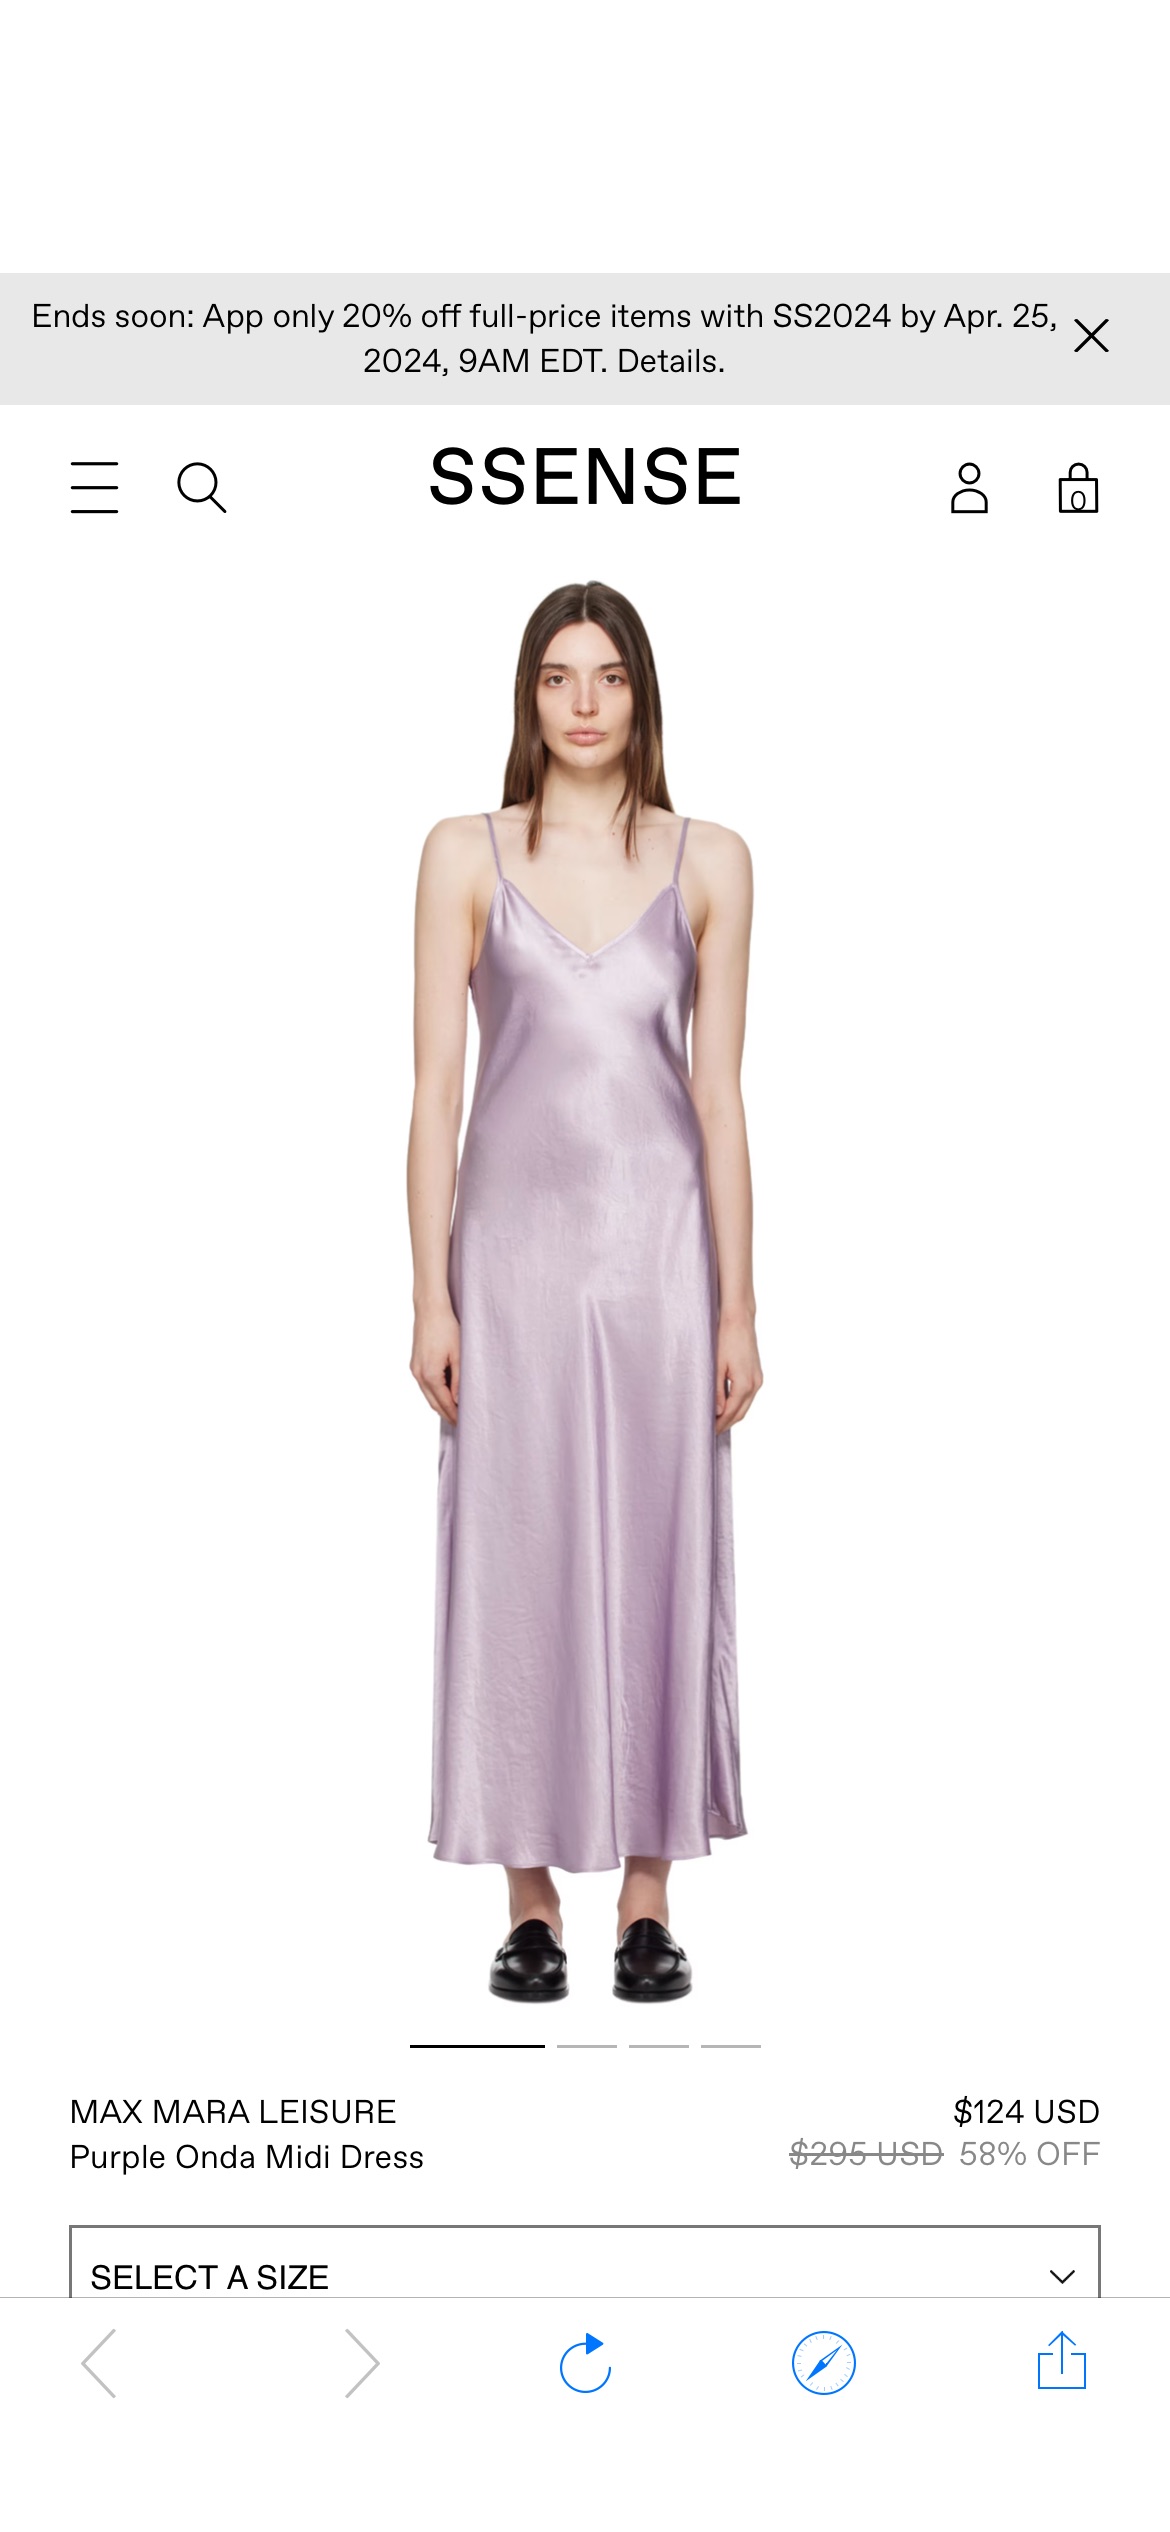 Purple Onda Midi Dress by Max Mara Leisure on Sale